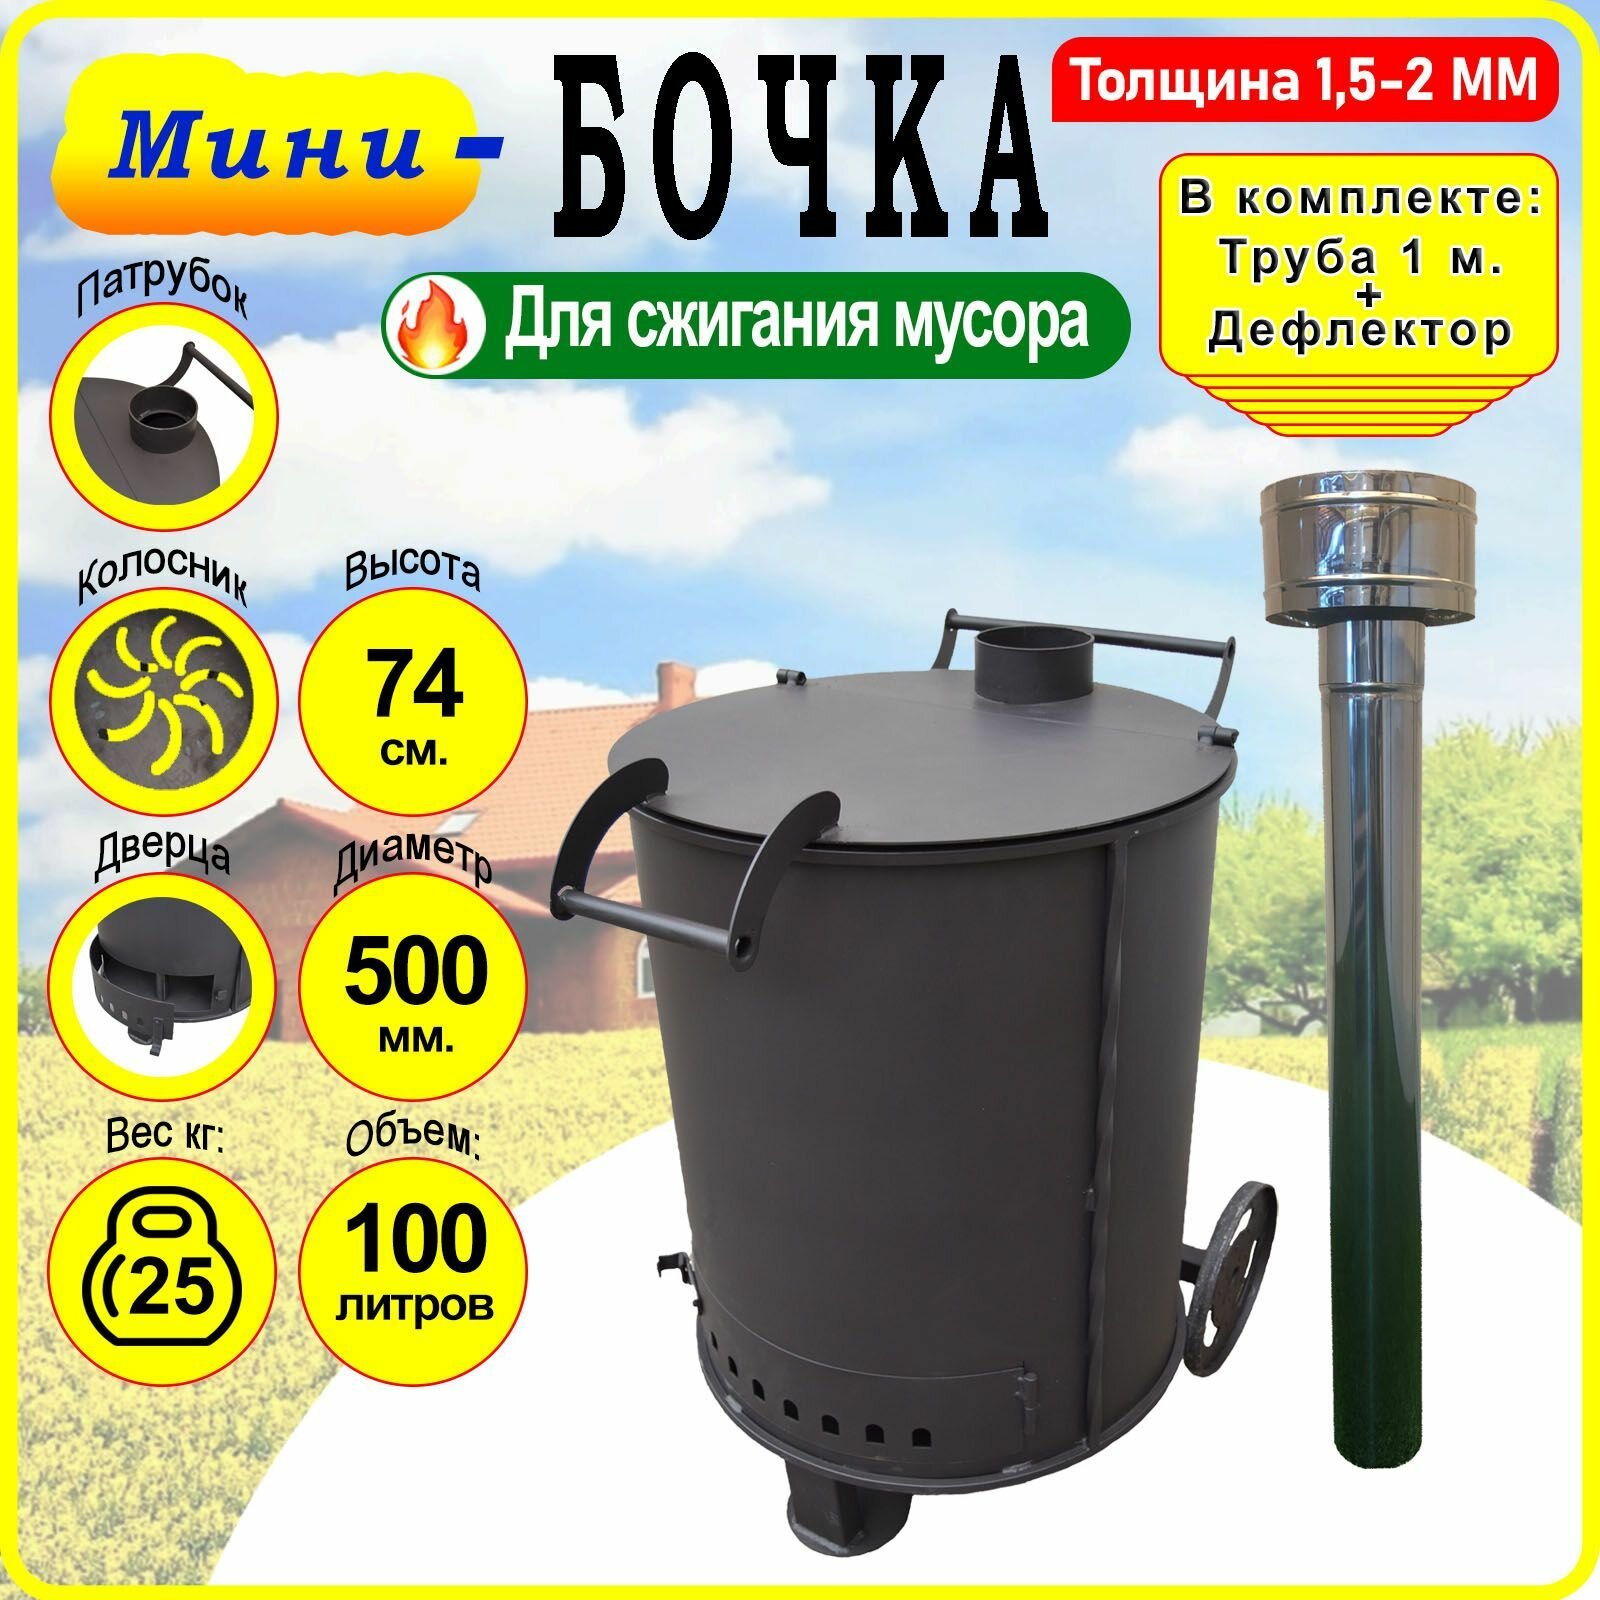 Бочка для сжигания мусора Круглая - Мини с колосником, трубой и дефлектором.